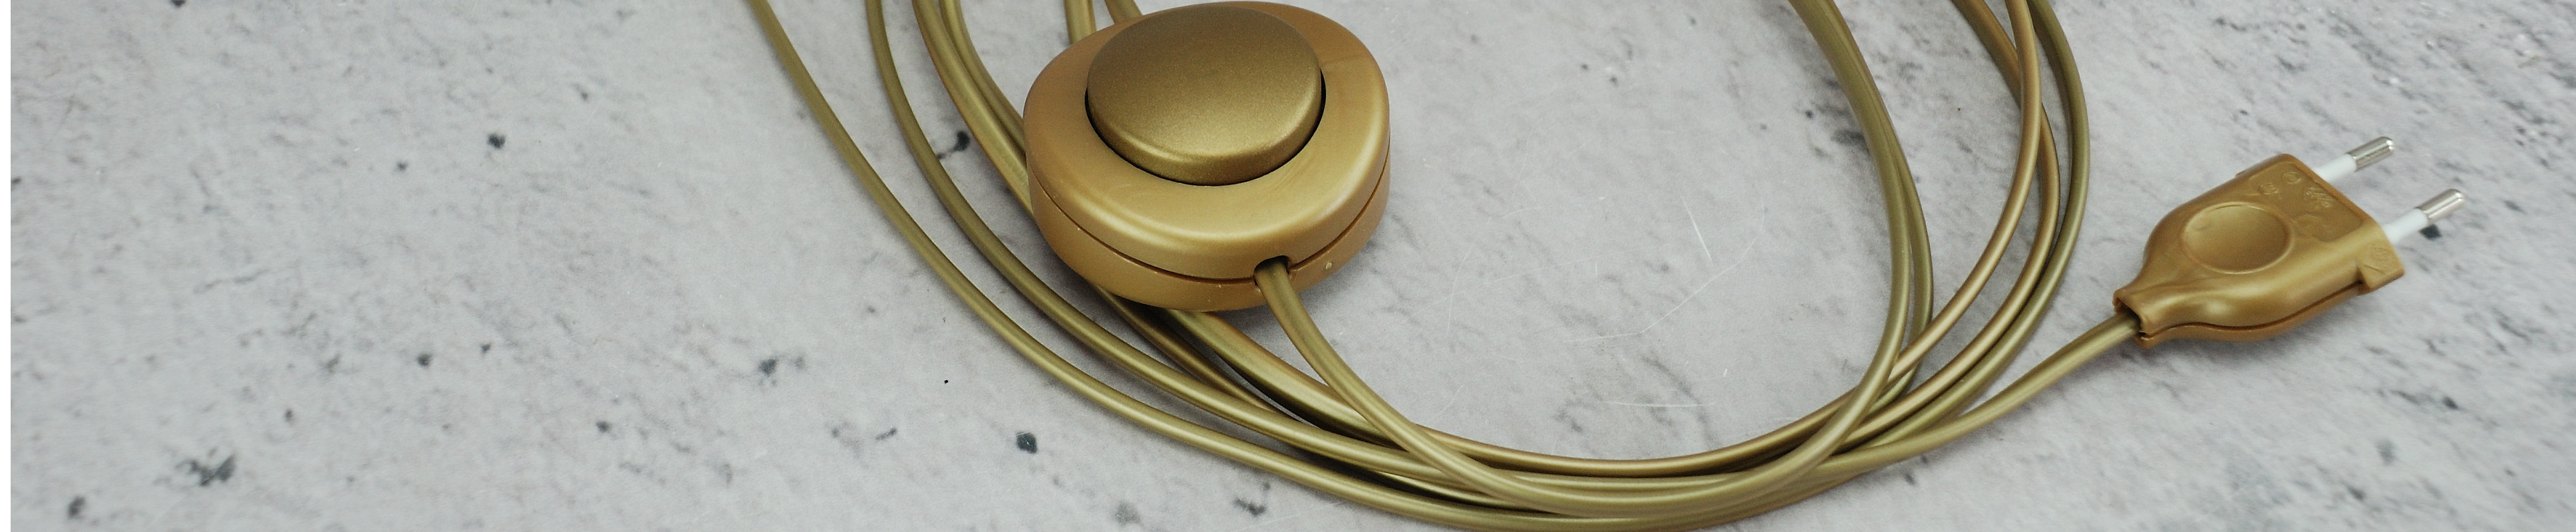 złoty kabel z wtyczką i przełącznikiem